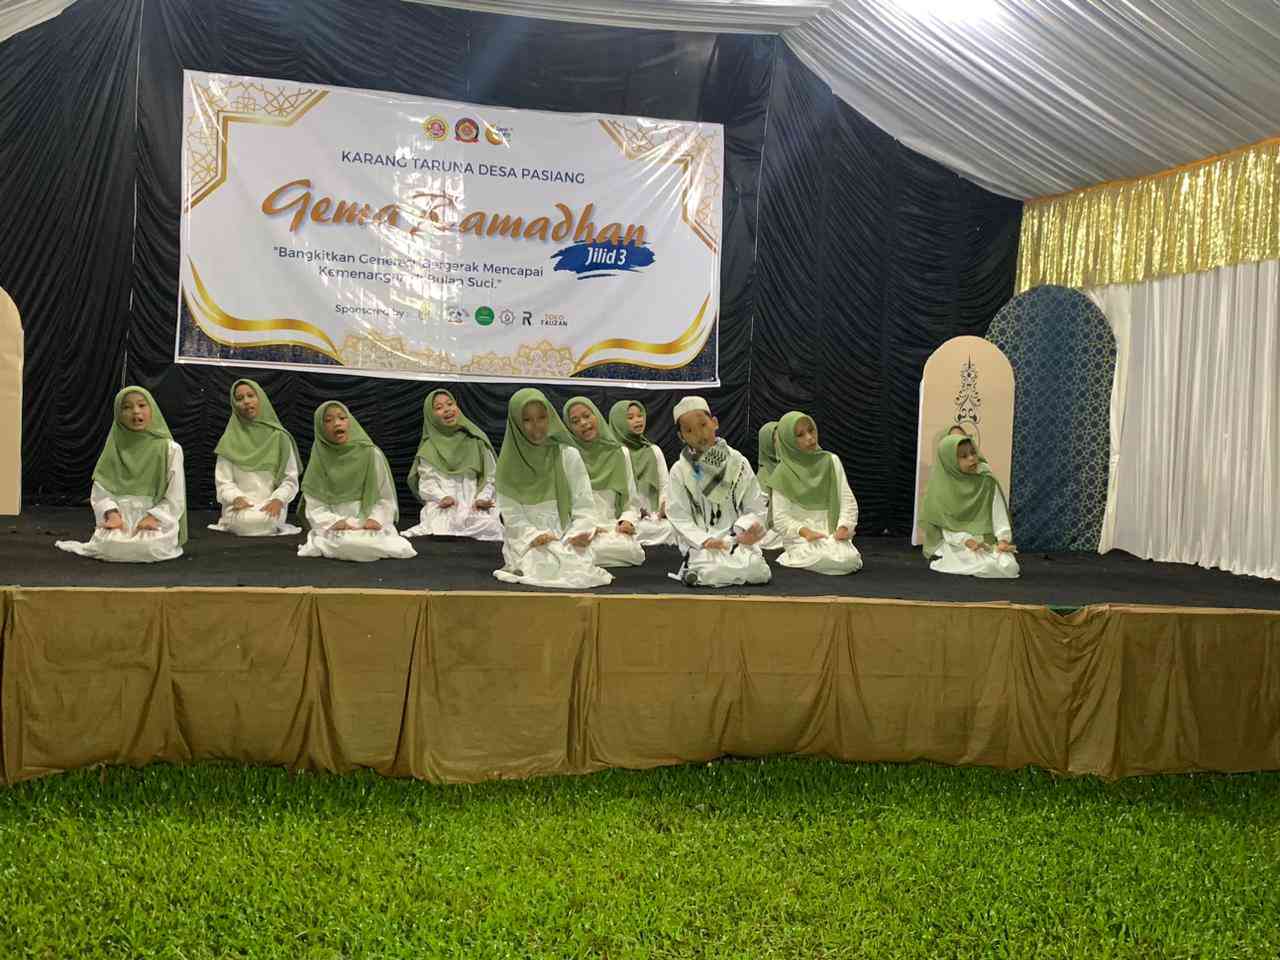 Memuliakan Rasulullah Saw: Lomba Grup Sholawat Gema Ramadhan Jilid 3 oleh Karang Taruna Desa Pasiang